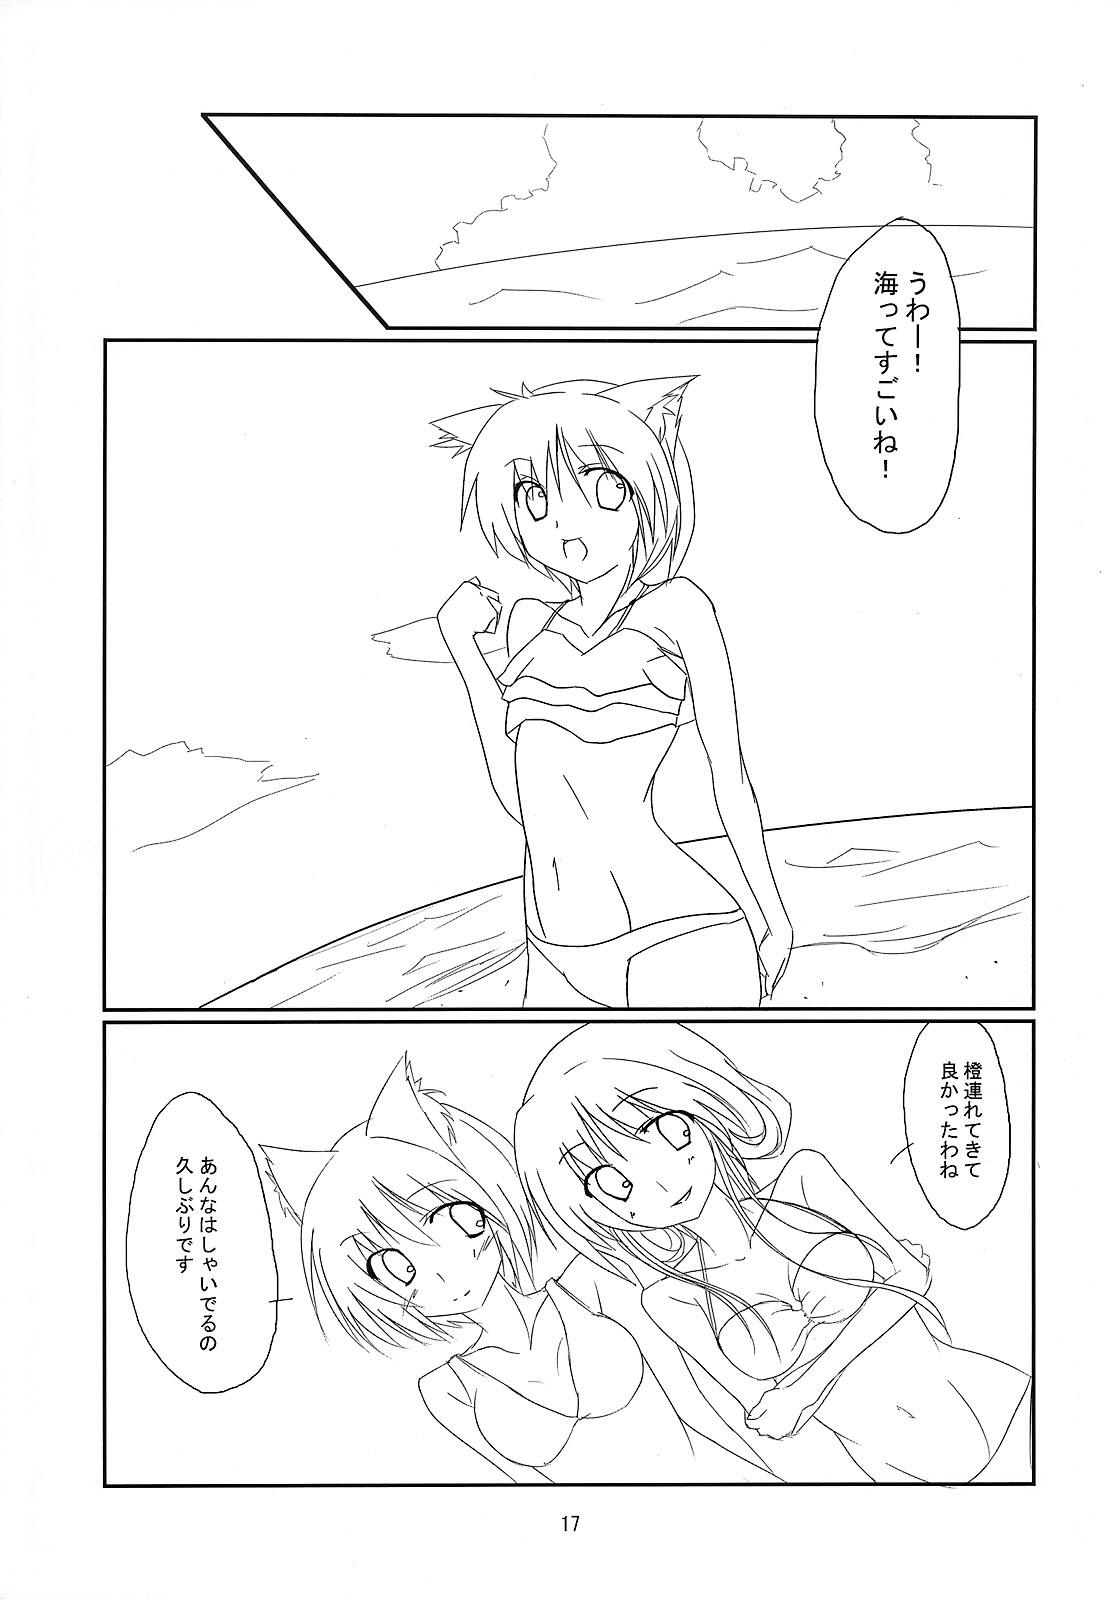 RAN × Yukari AND Alice × Marisa 15